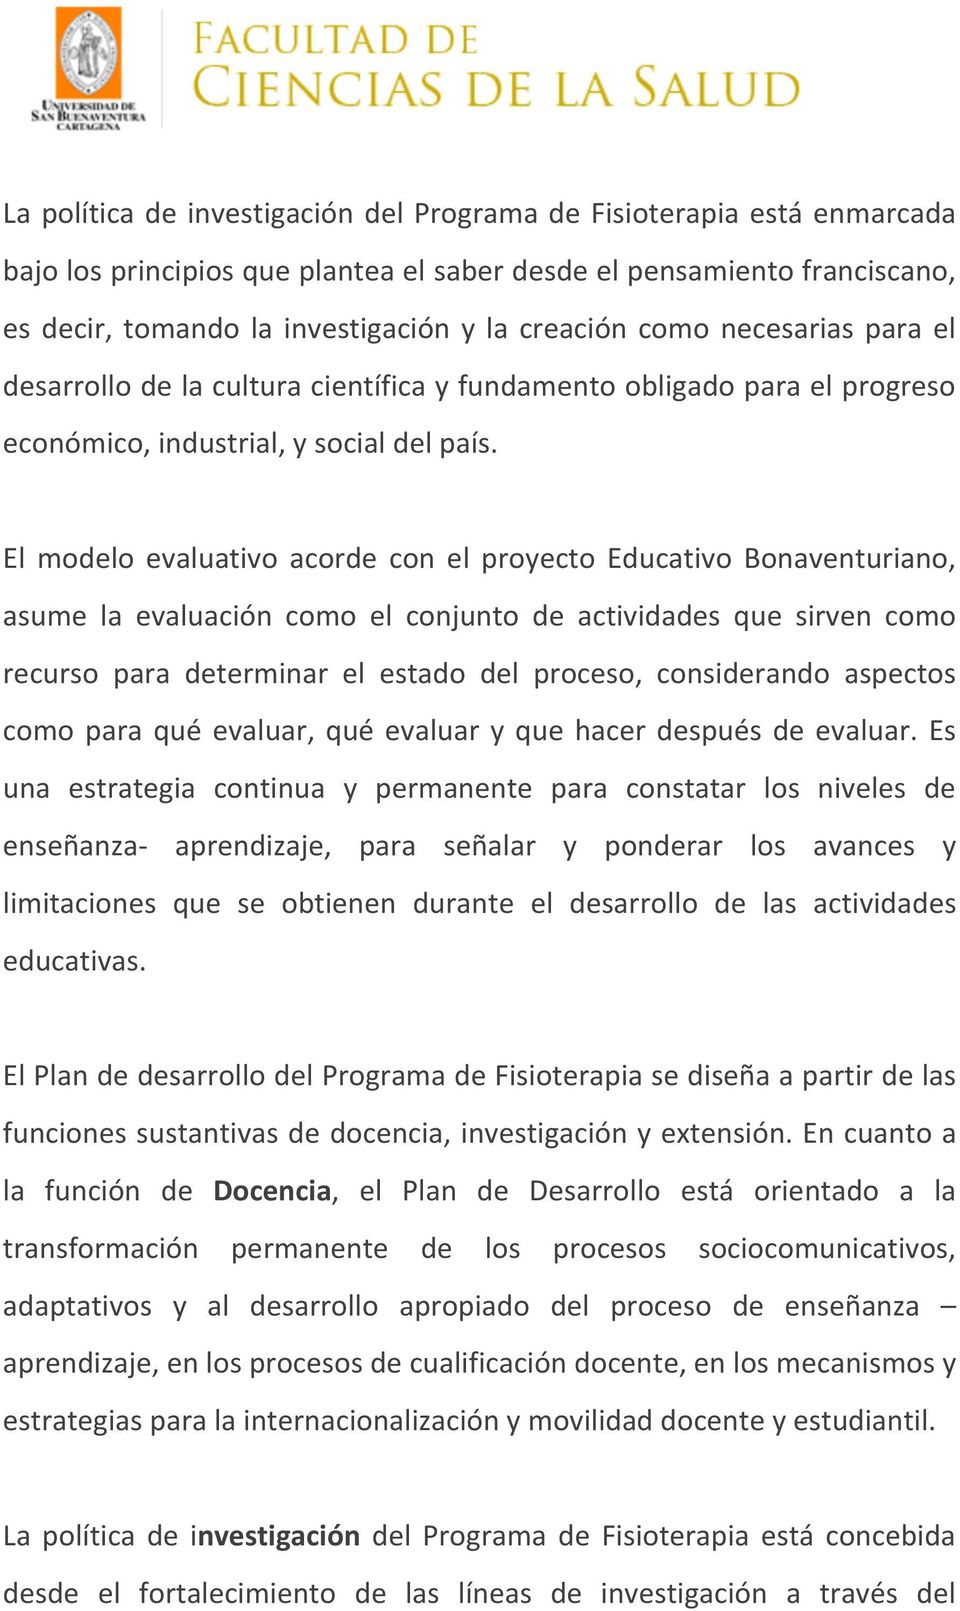 El modelo evaluativo acorde con el proyecto Educativo Bonaventuriano, asume la evaluación como el conjunto de actividades que sirven como recurso para determinar el estado del proceso, considerando